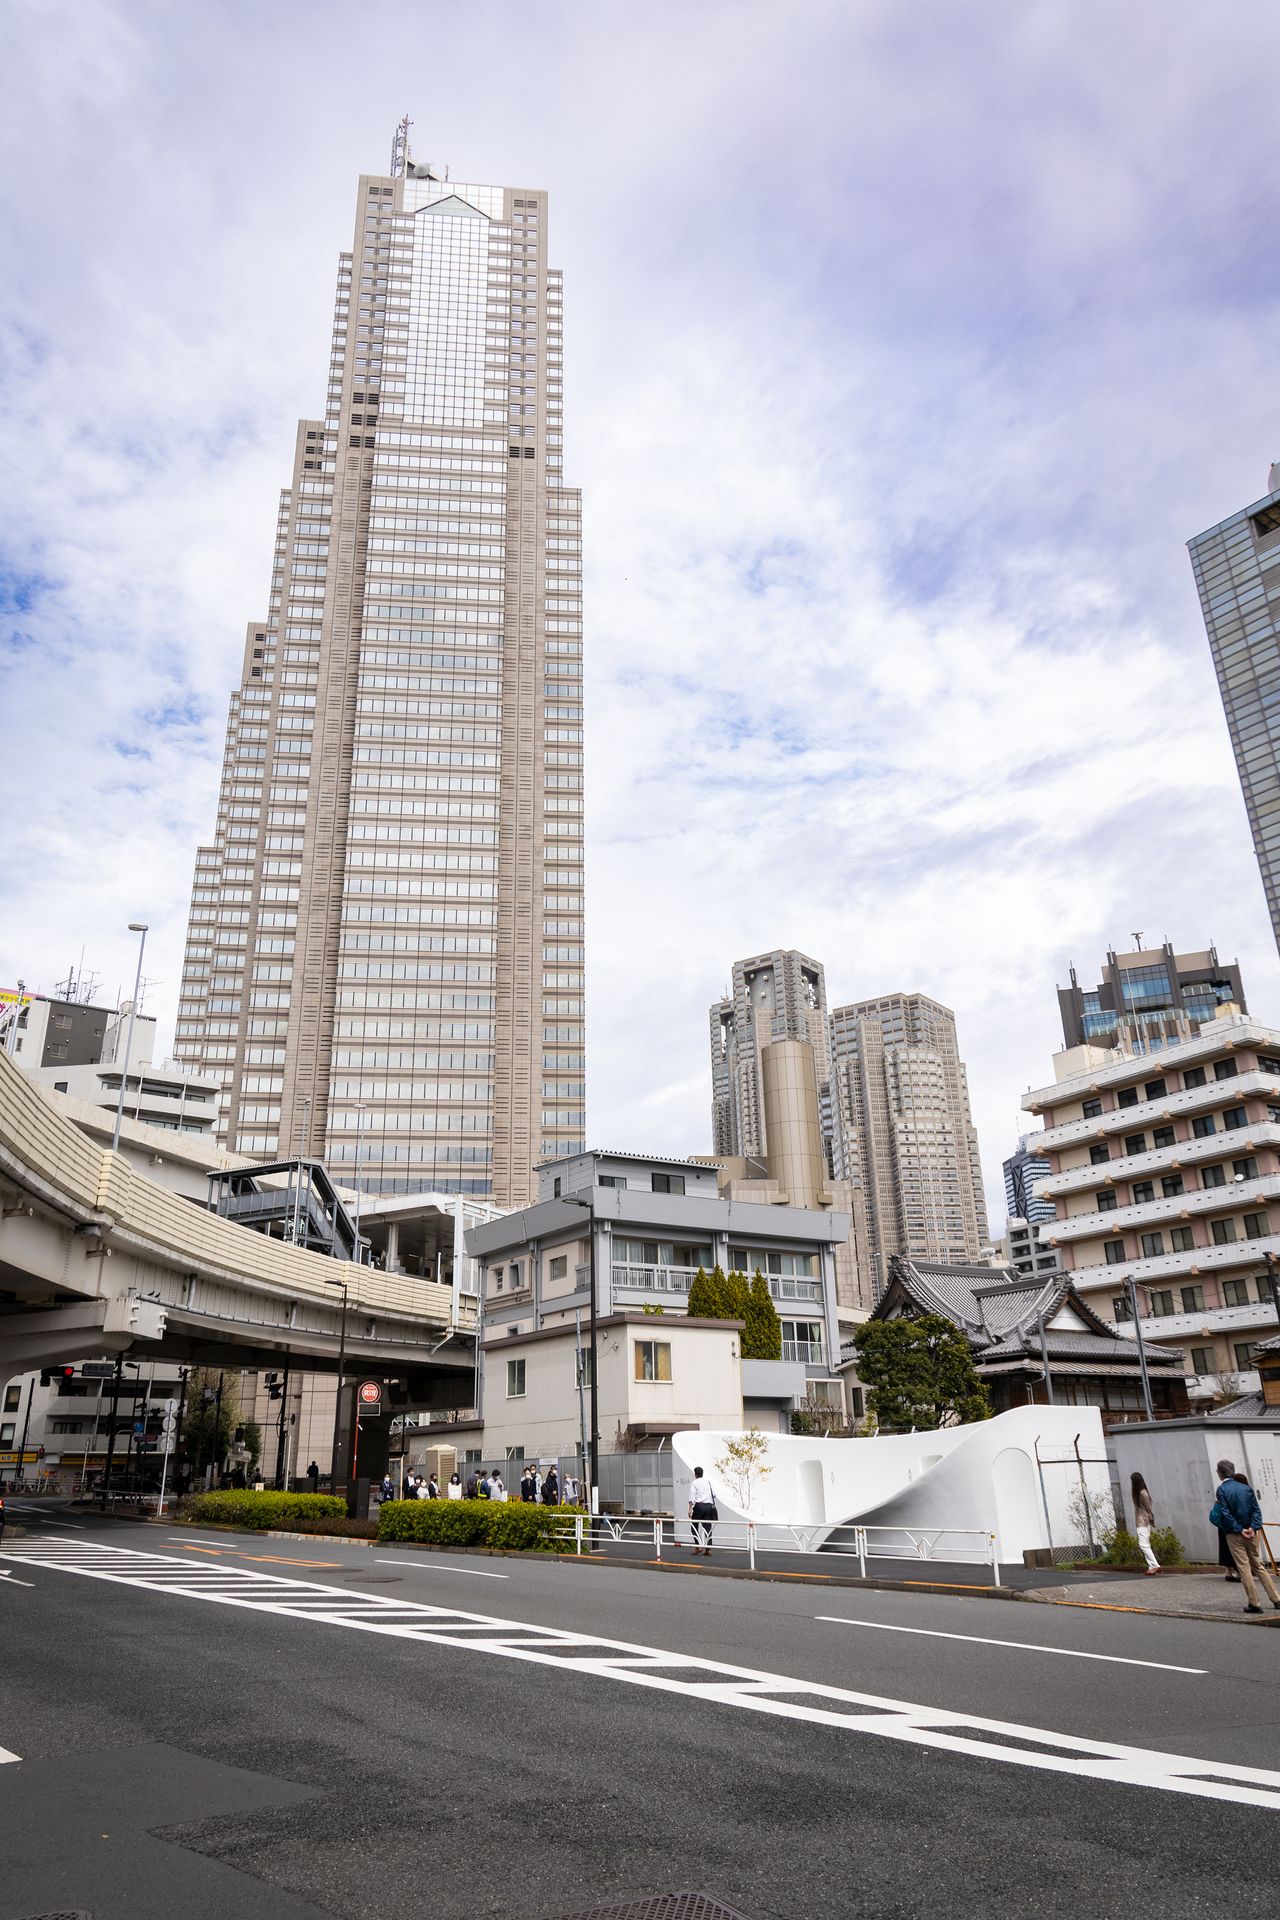 Ces WC publics d’un blanc immaculé se démarquent de la ville. En arrière-plan, l'hôtel Park Hyatt Tokyo et le siège du gouvernement métropolitain de Tokyo.